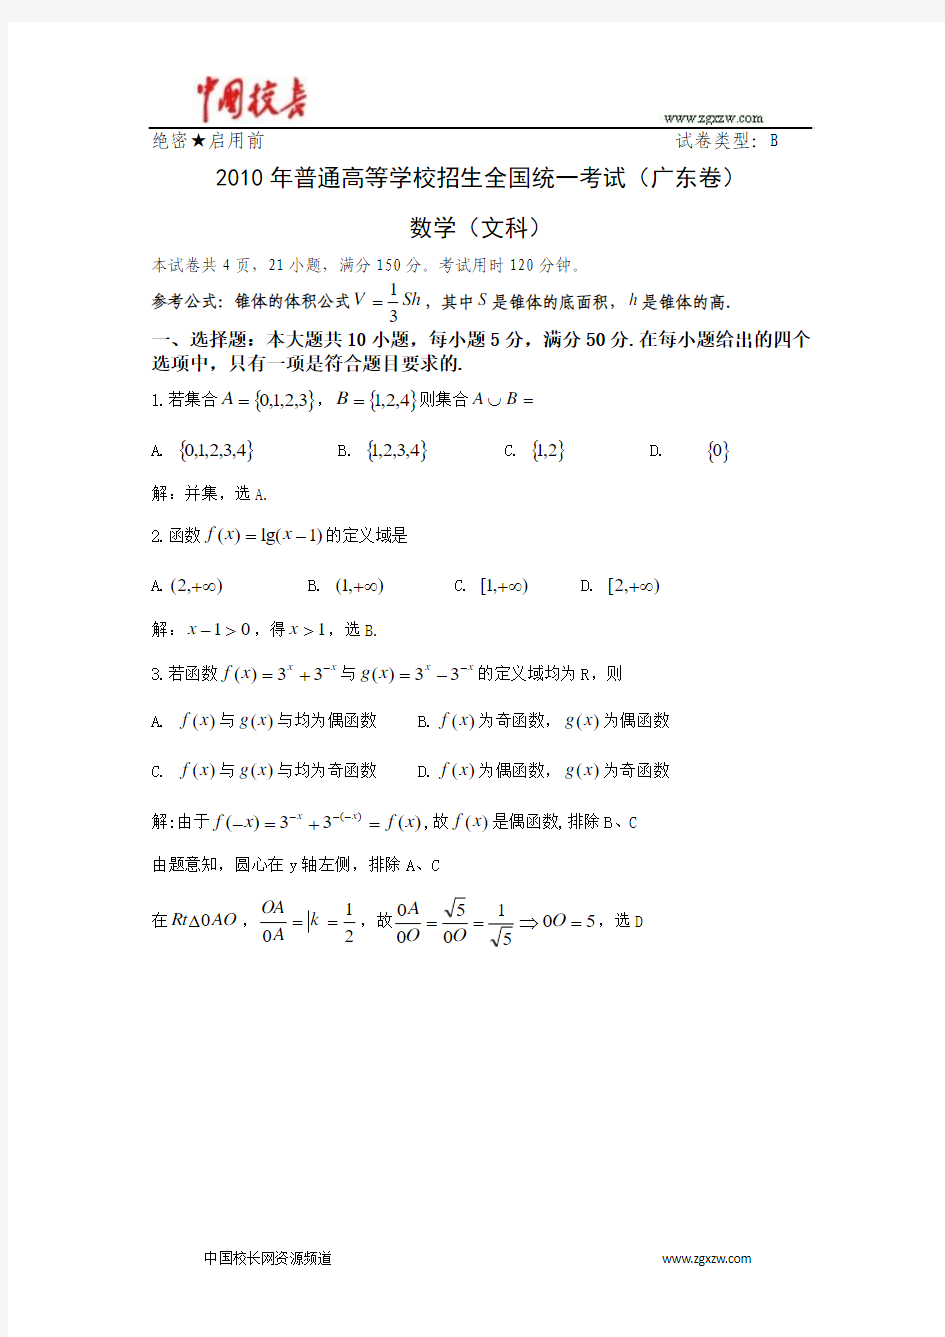 2010年全国高考文科数学试题及答案-广东